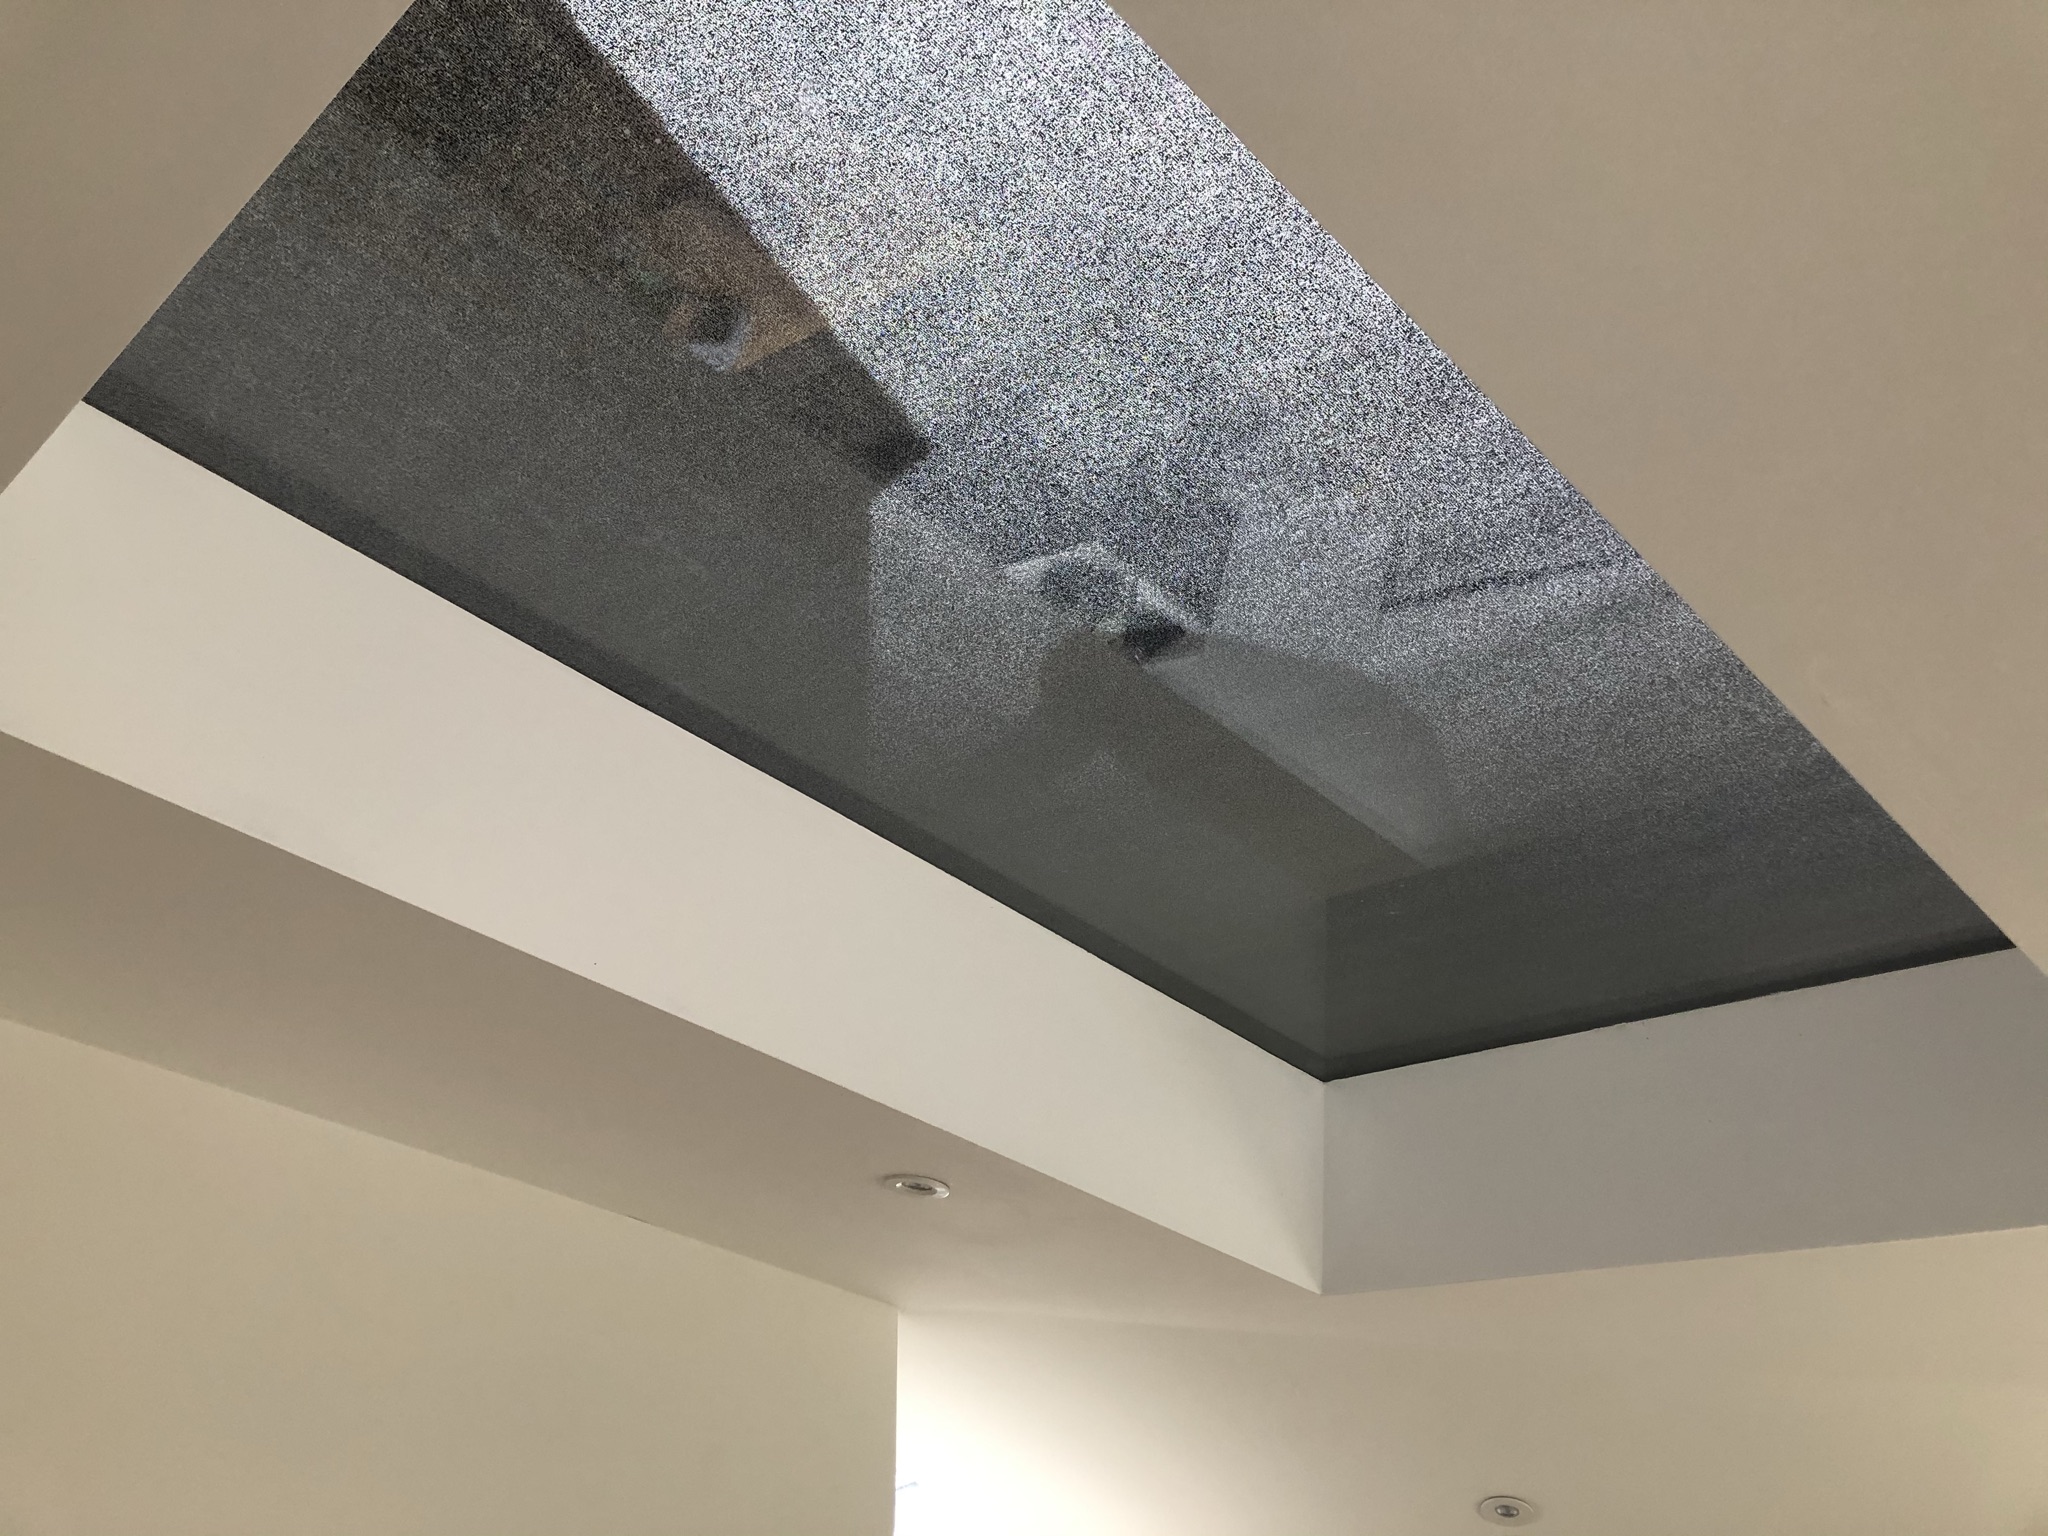 Undershot of external rooflight blind